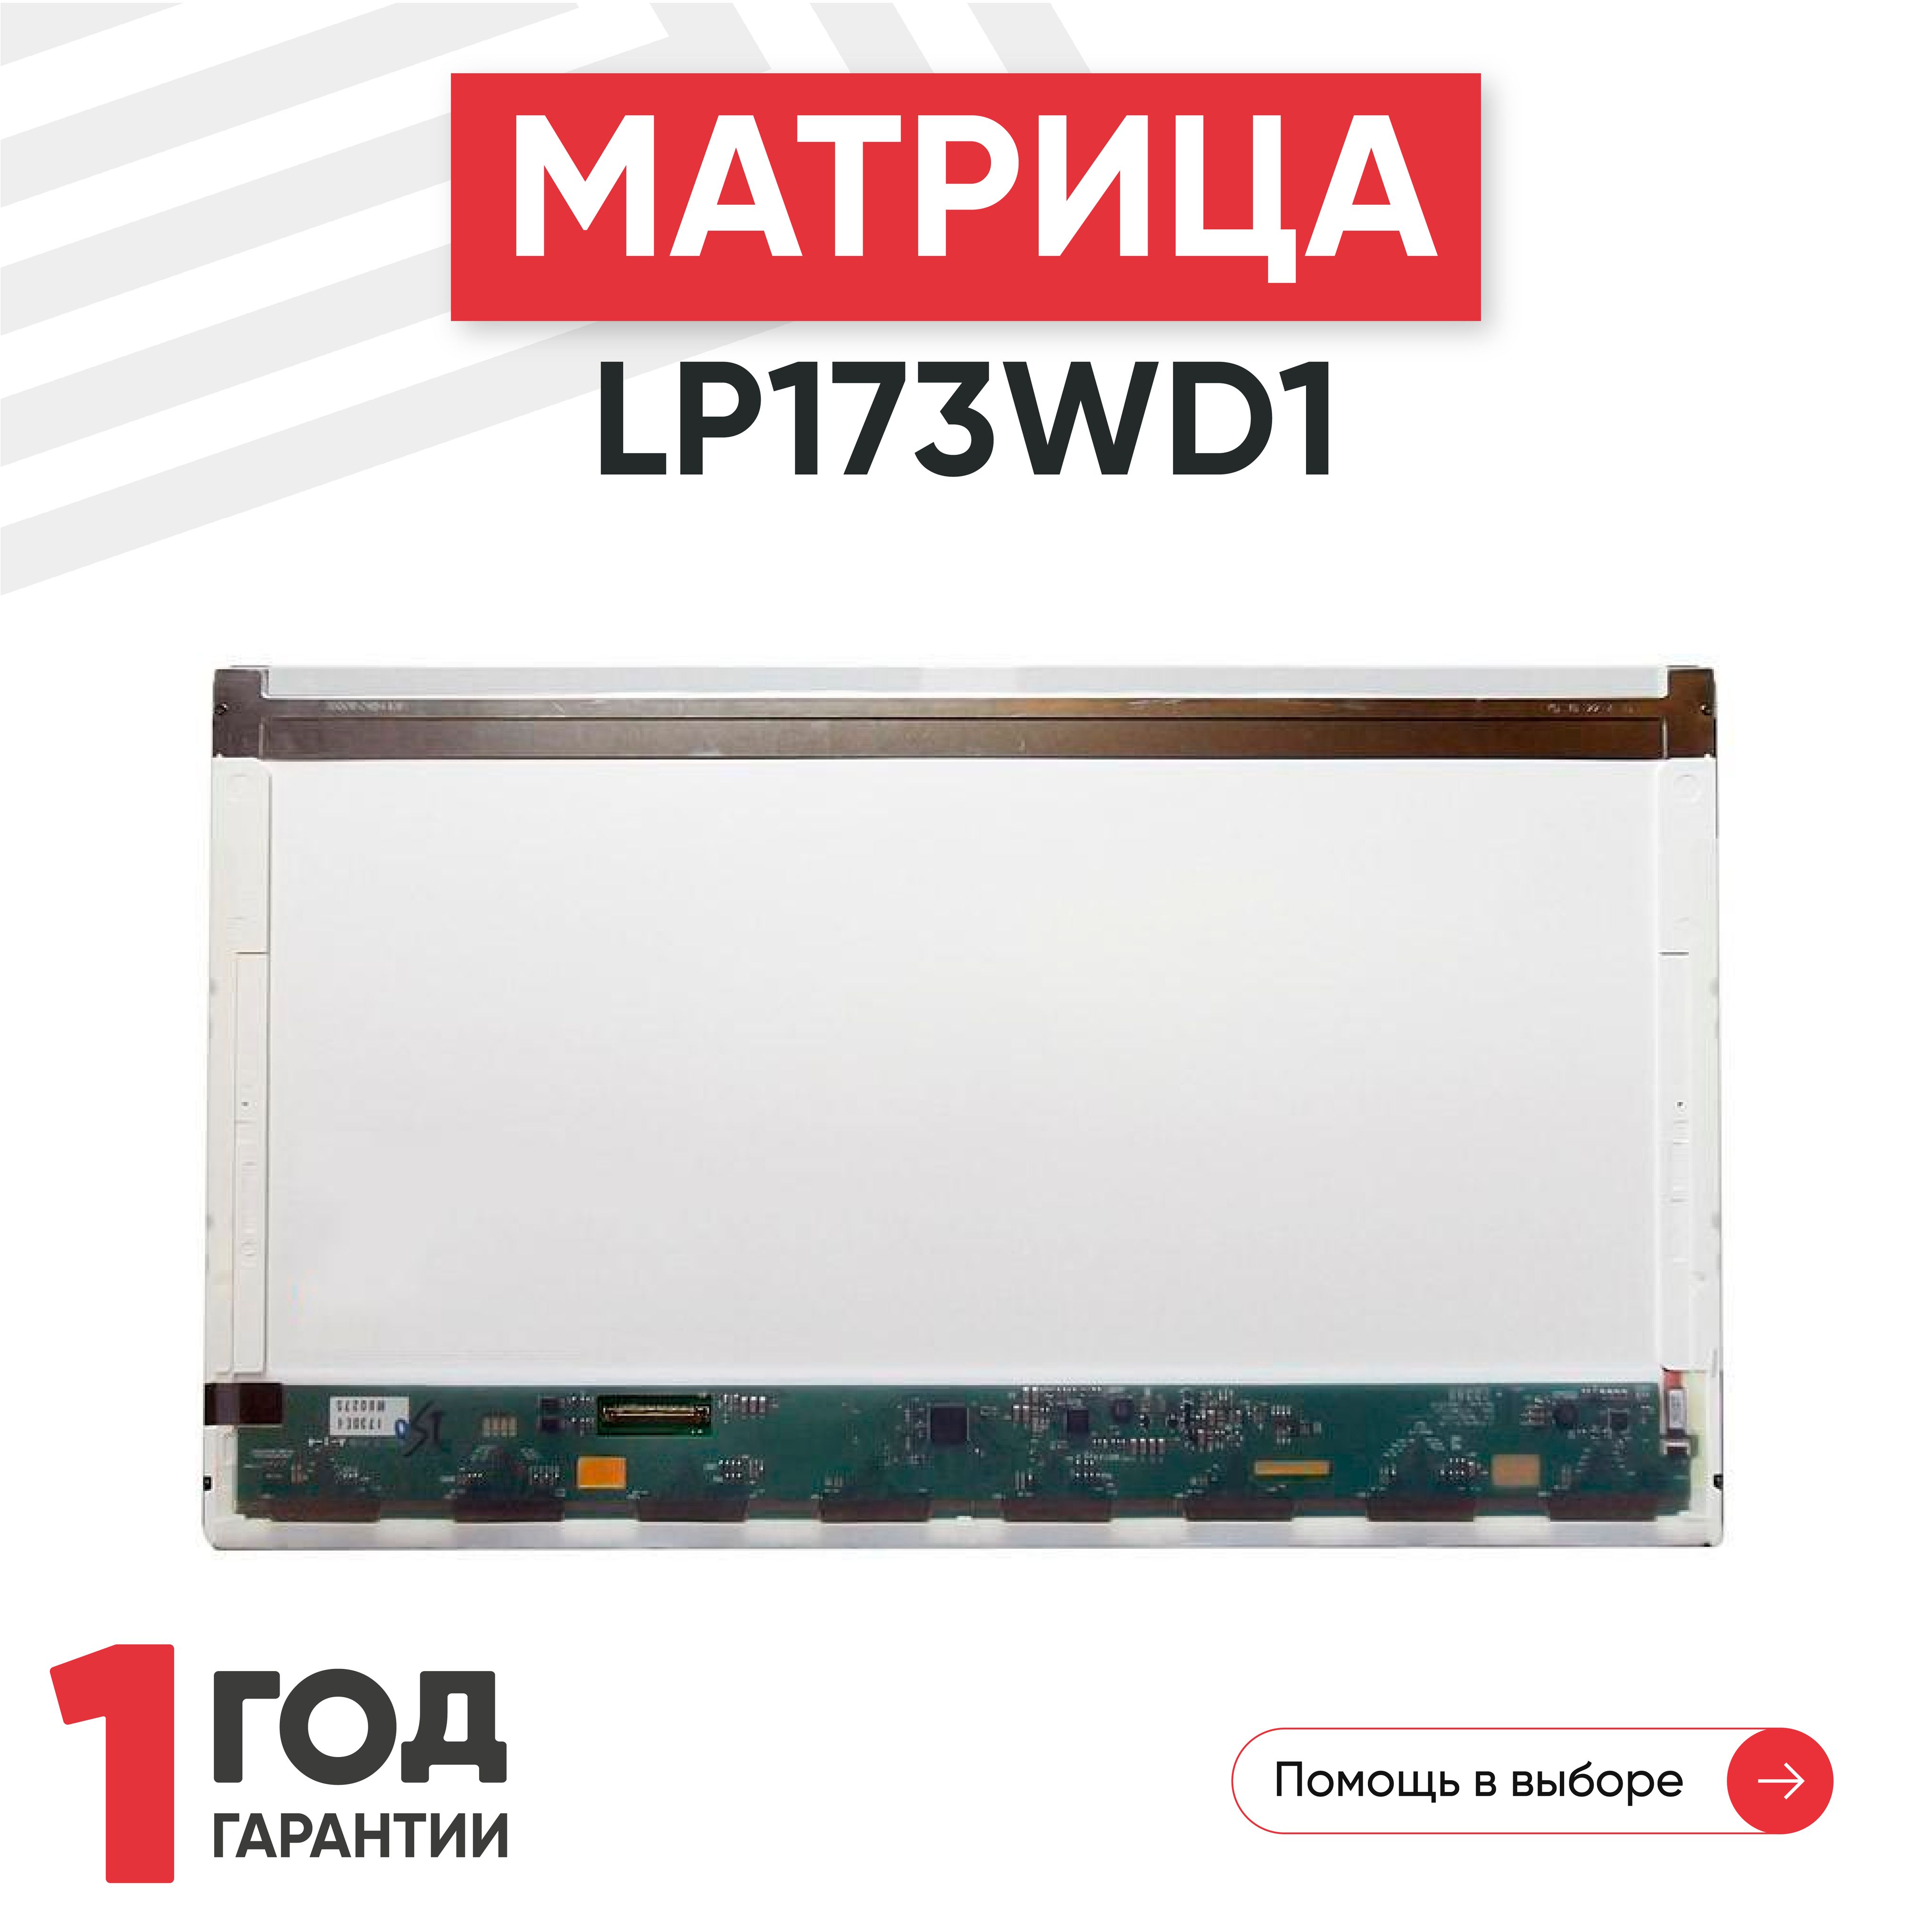 МатрицаLP173WD1(TL)(A1)дляноутбука,1600х900,TN,40pin,глянцевая,светодиодная(LED),безкреплений